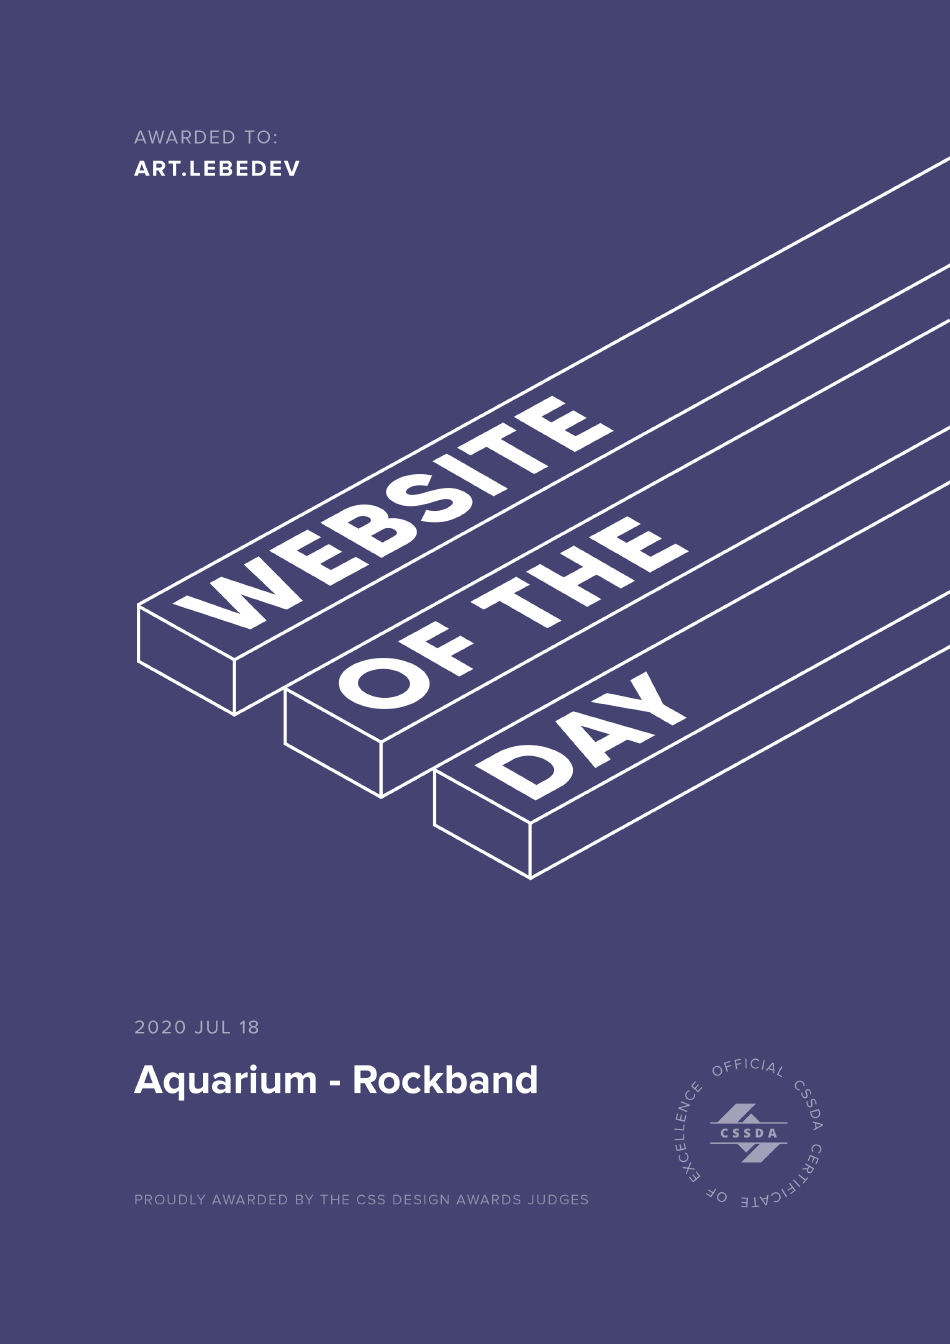 aquarium site2 awards cssda